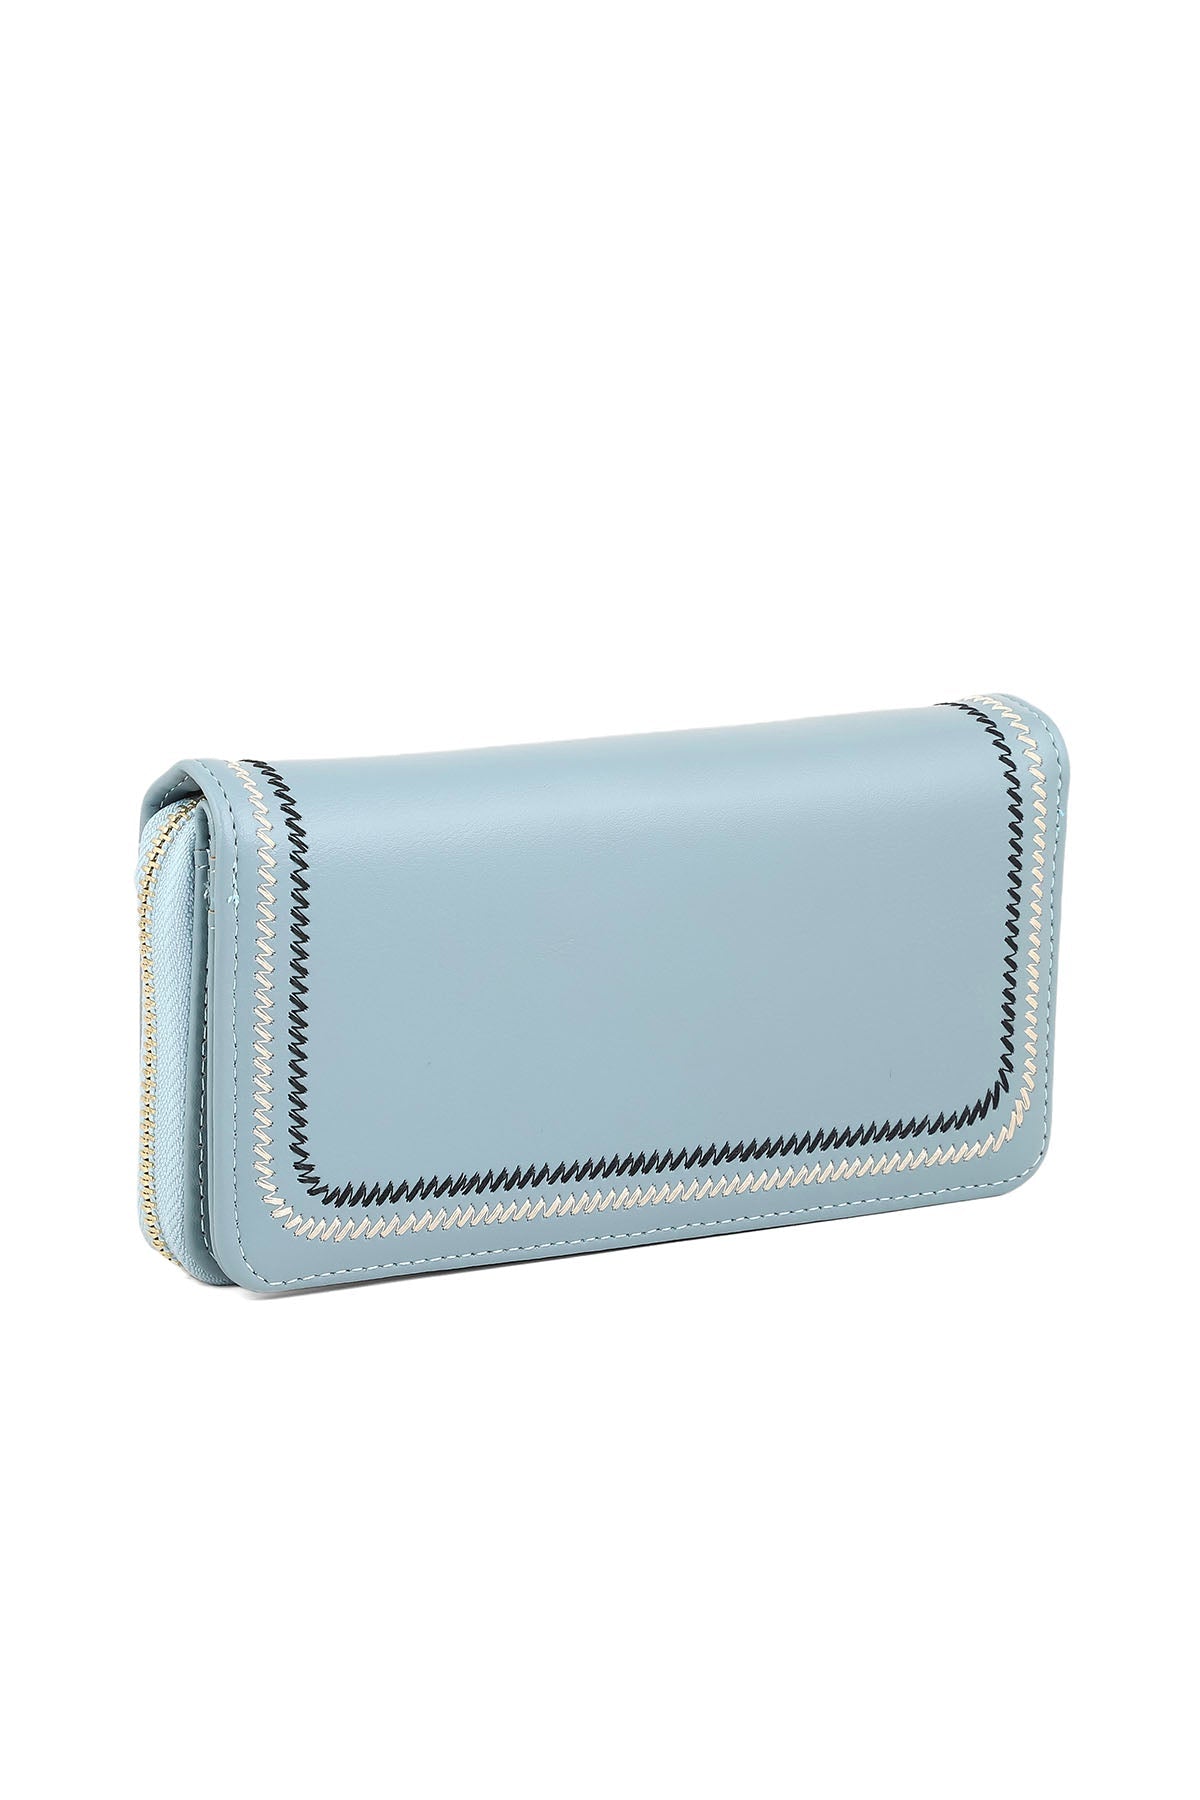 Wristlet Wallet B26047-Blue